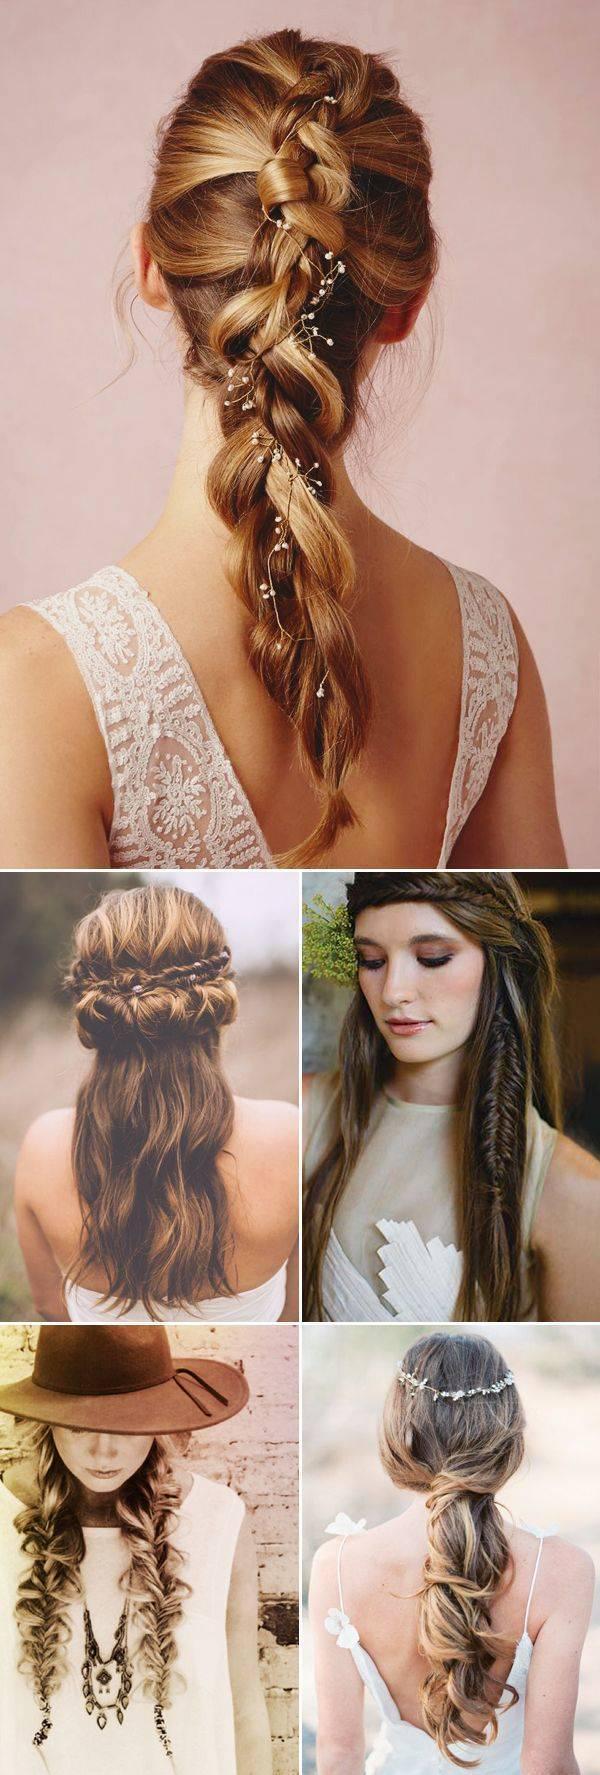 รูปภาพ:http://pophaircuts.com/images/2015/09/boho-hairstyles-with-braids-%E2%80%93-bun-updos-other-great-new-stuff-to-try-out11.jpg